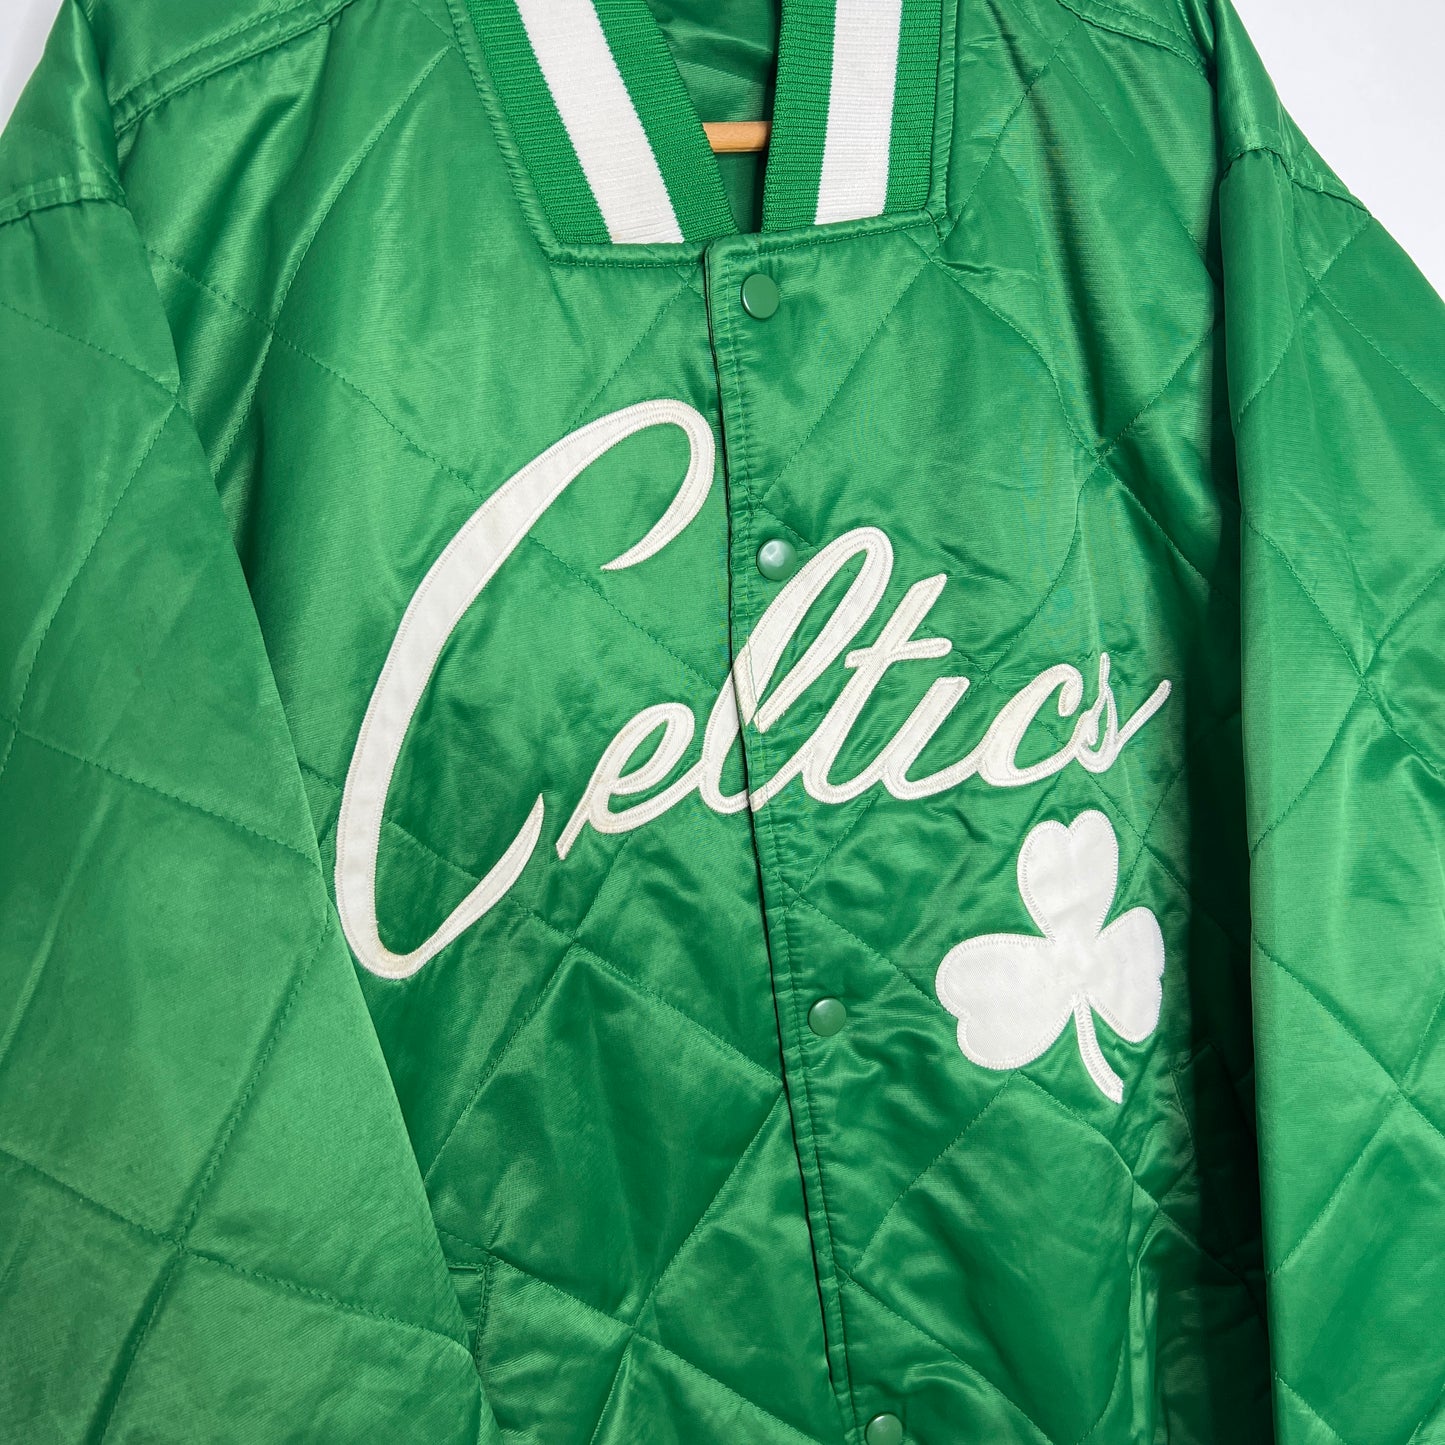 Boston Celtics Majestic Jacket